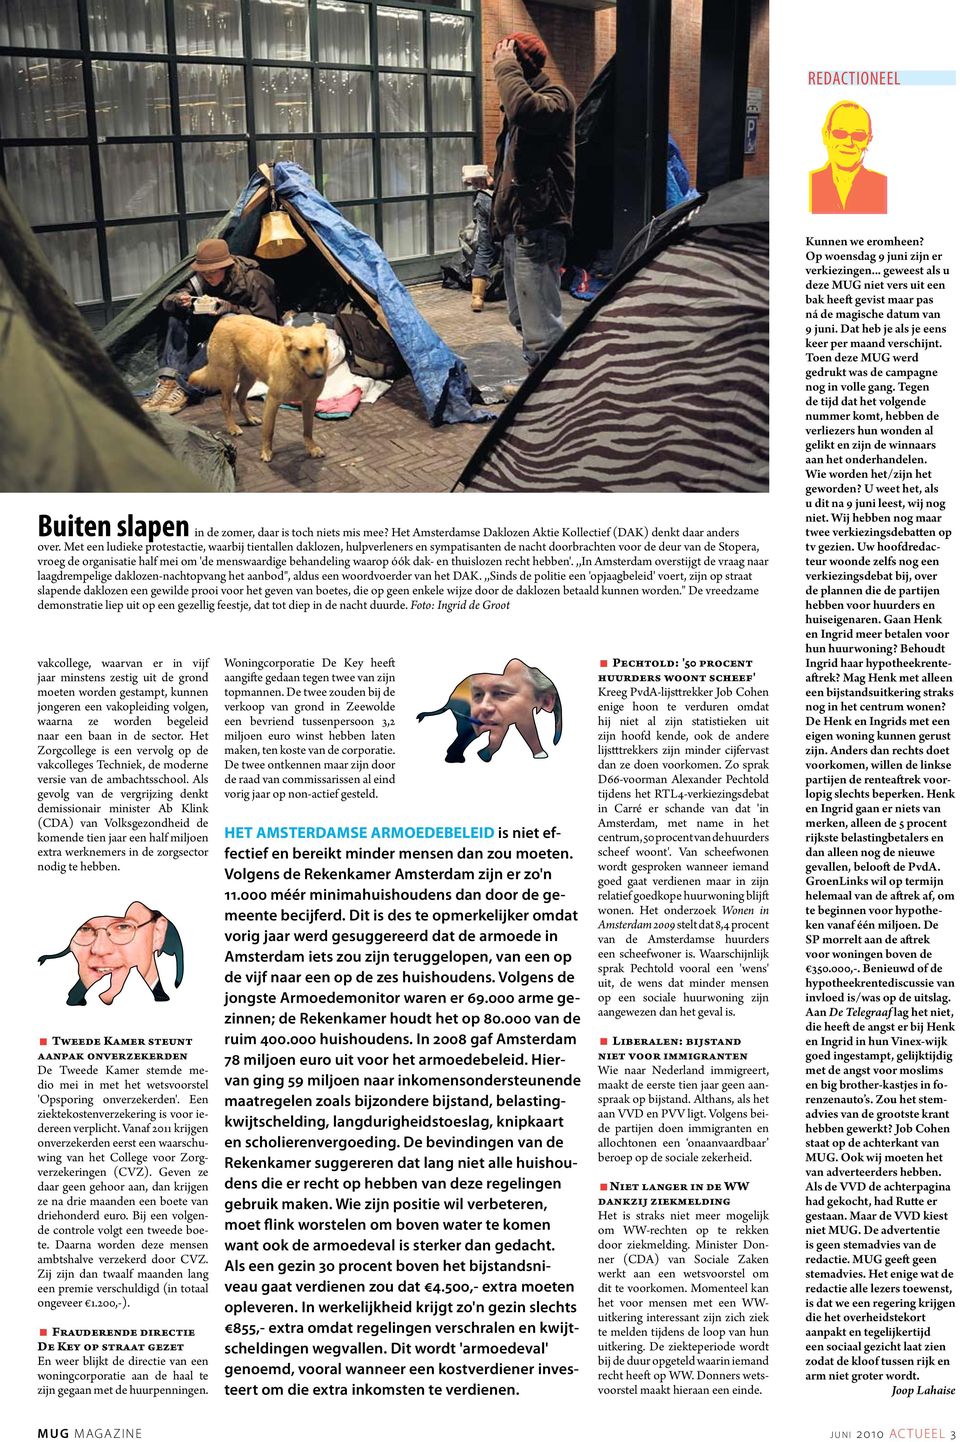 behandeling waarop óók dak- en thuislozen recht hebben'.,,in Amsterdam overstijgt de vraag naar laagdrempelige daklozen-nachtopvang het aanbod", aldus een woordvoerder van het DAK.